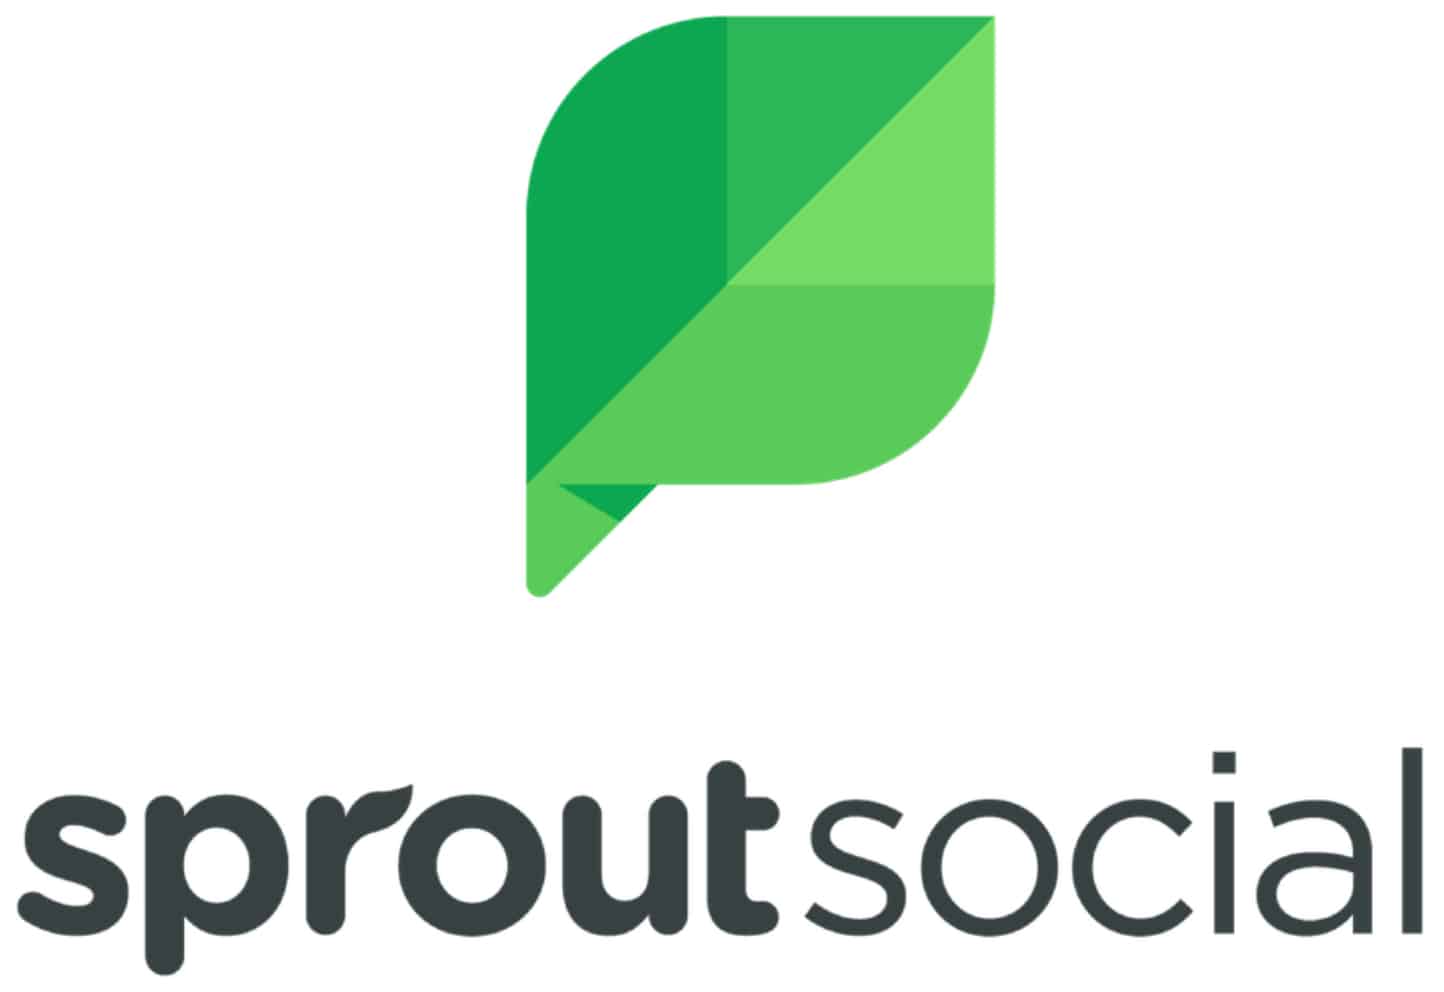 Sprout Social logo